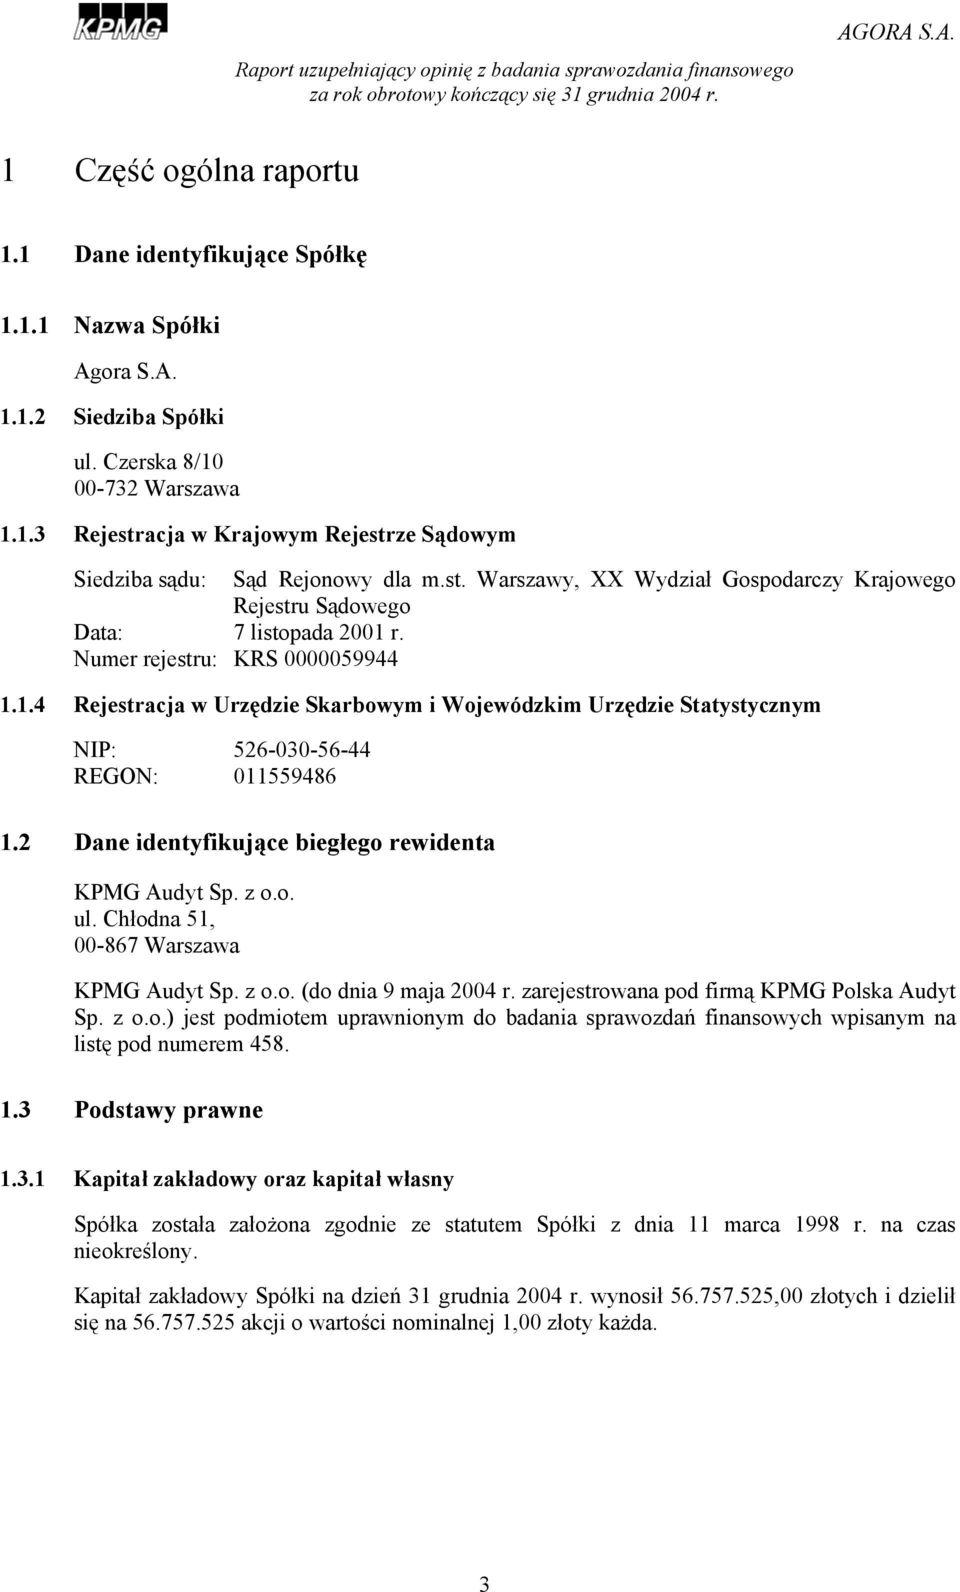 2 Dane identyfikujące biegłego rewidenta KPMG Audyt Sp. z o.o. ul. Chłodna 51, 00-867 Warszawa KPMG Audyt Sp. z o.o. (do dnia 9 maja 2004 r. zarejestrowana pod firmą KPMG Polska Audyt Sp. z o.o.) jest podmiotem uprawnionym do badania sprawozdań finansowych wpisanym na listę pod numerem 458.